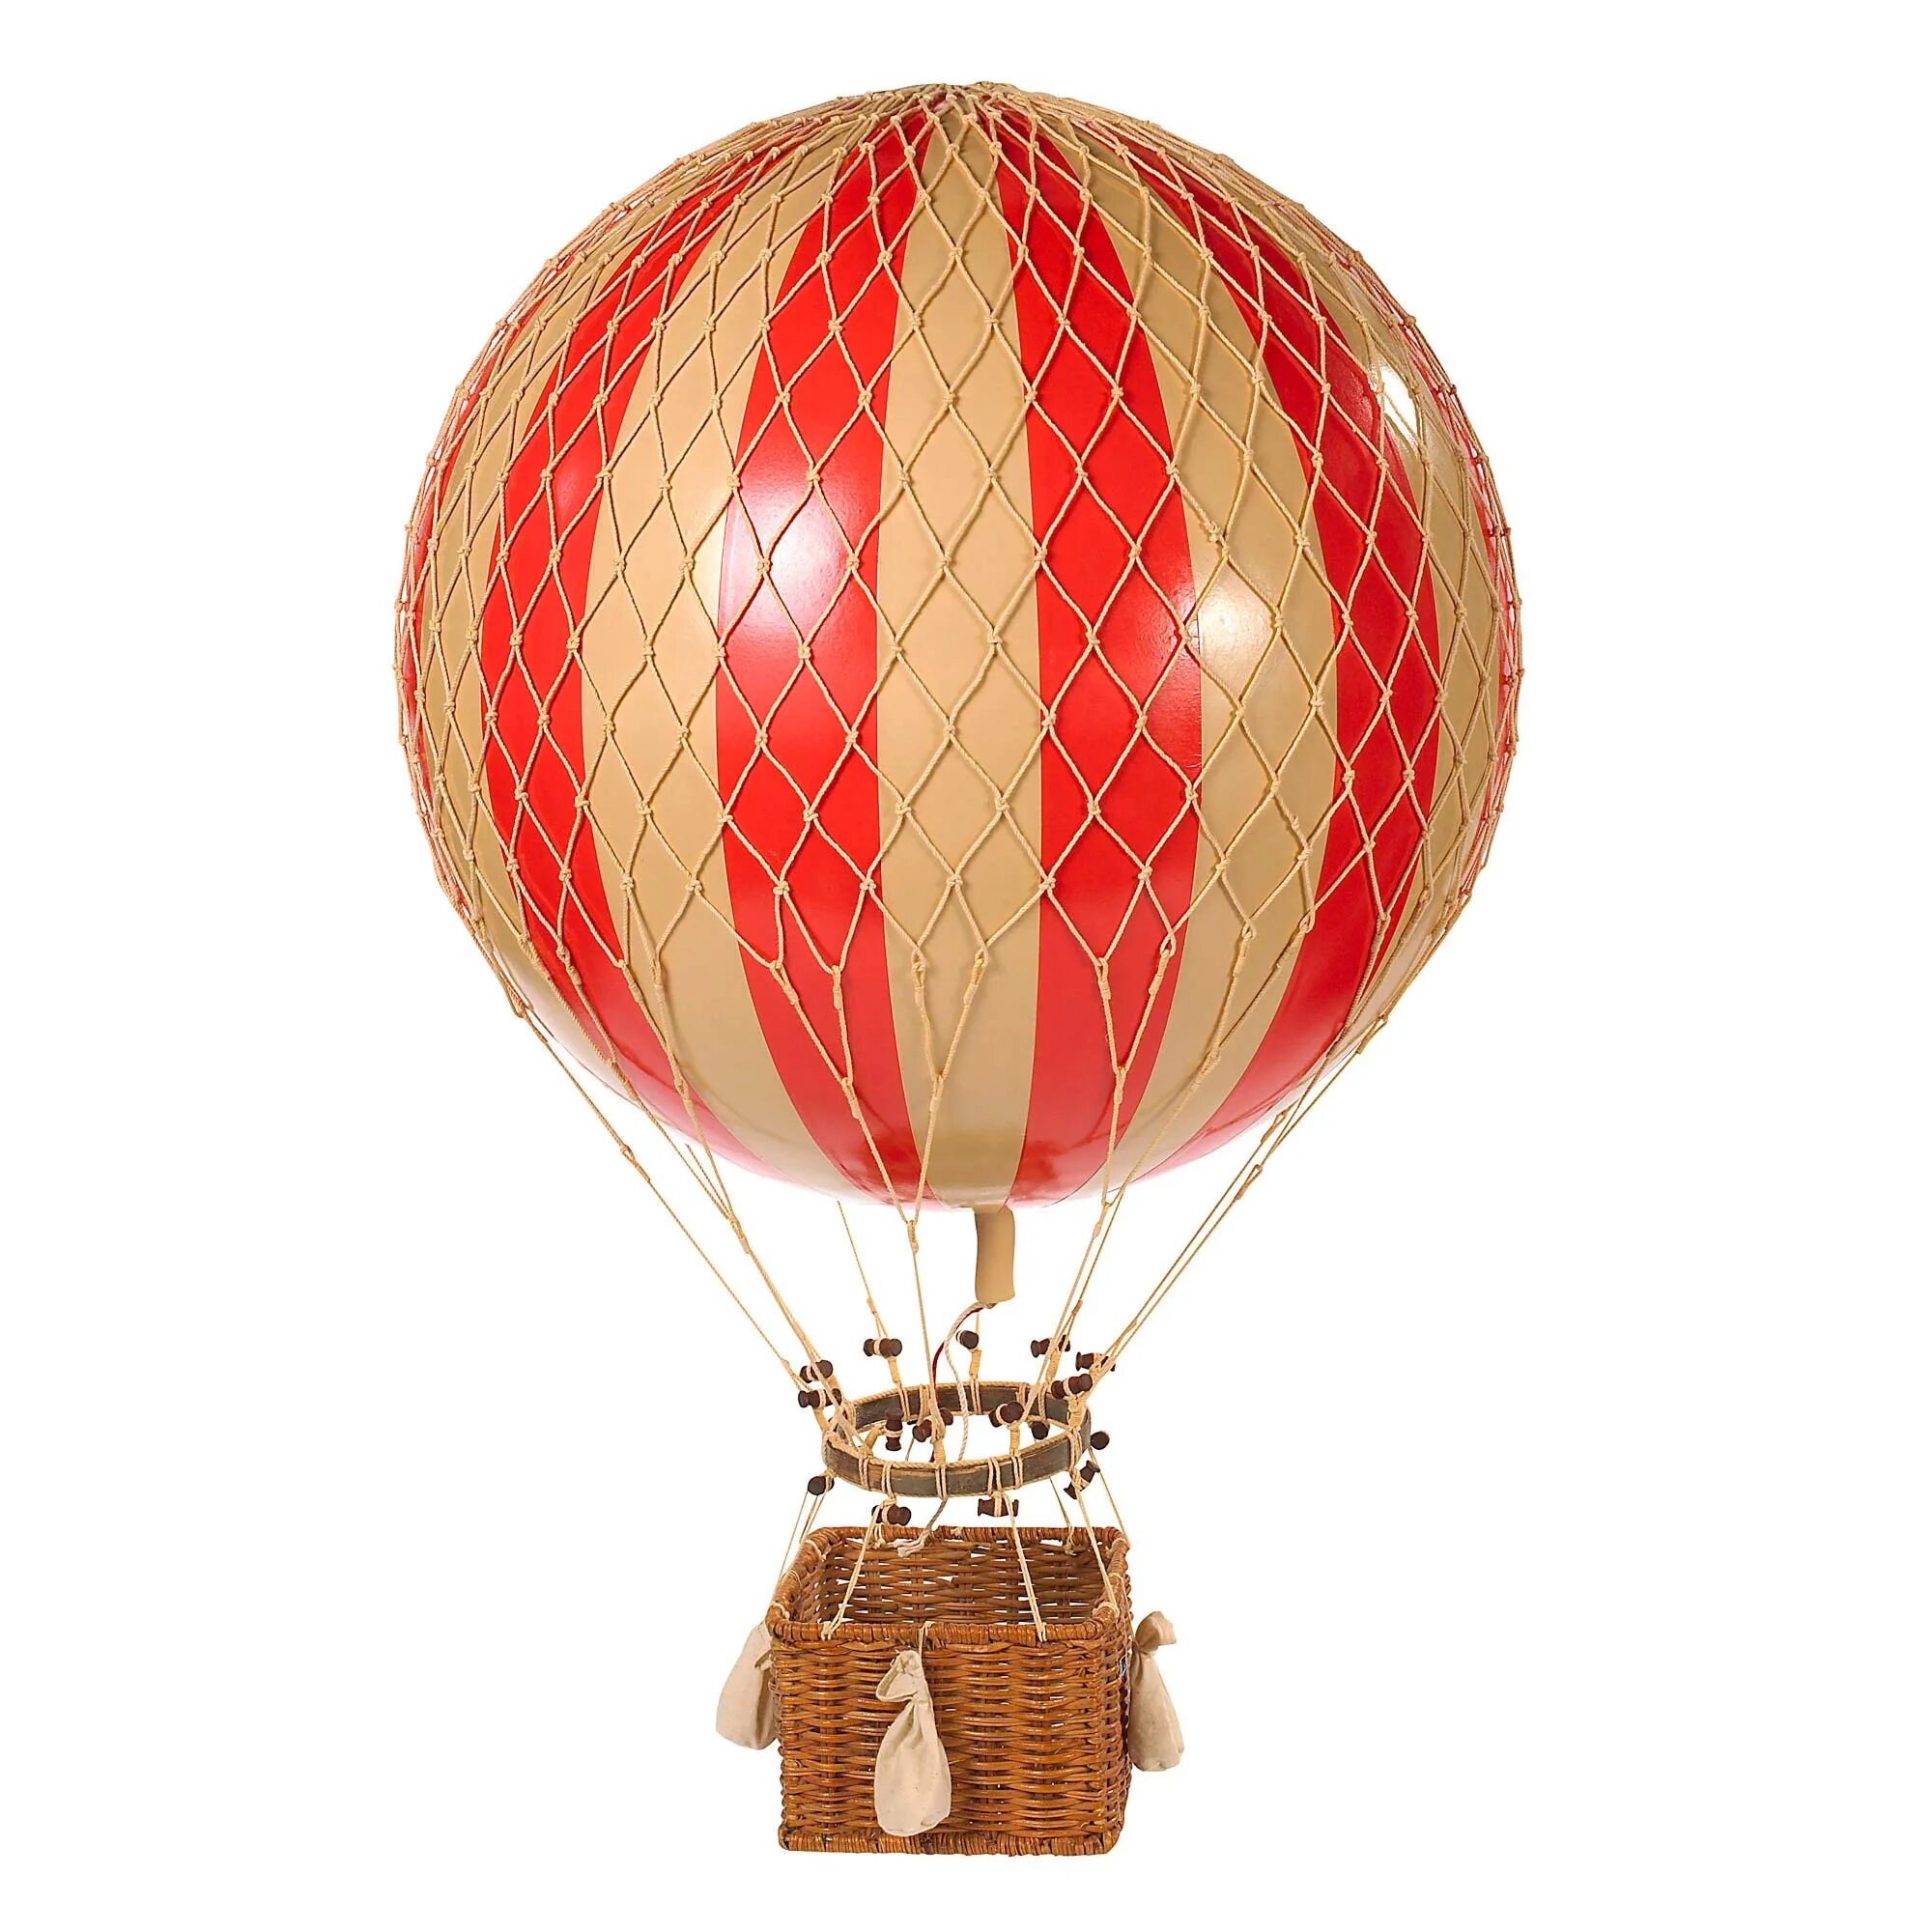 Модели воздушных шаров. Воздушный шар Жюль Верн. Воздушный шар с корзиной. Воздушный шар игрушка. Корзинка для воздушного шара.